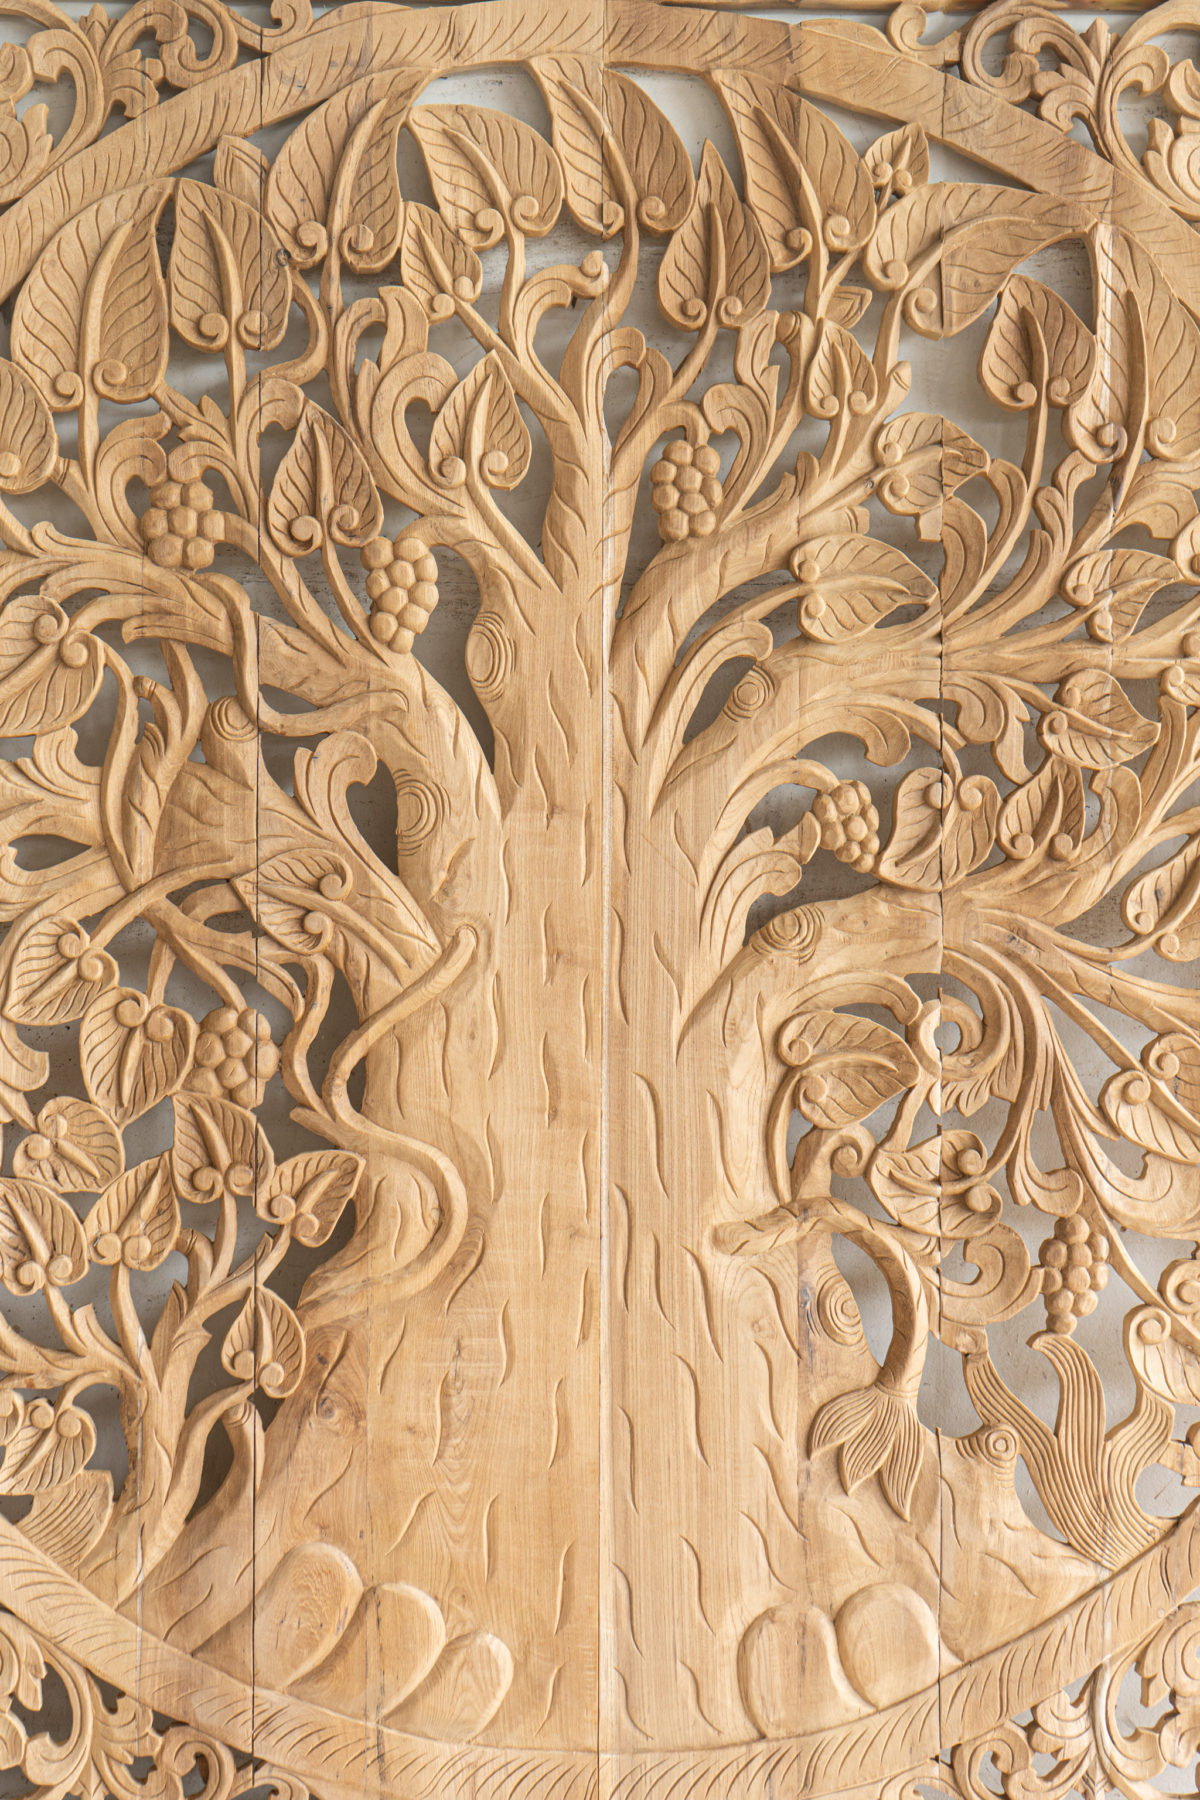 Asian Wood carving in teak